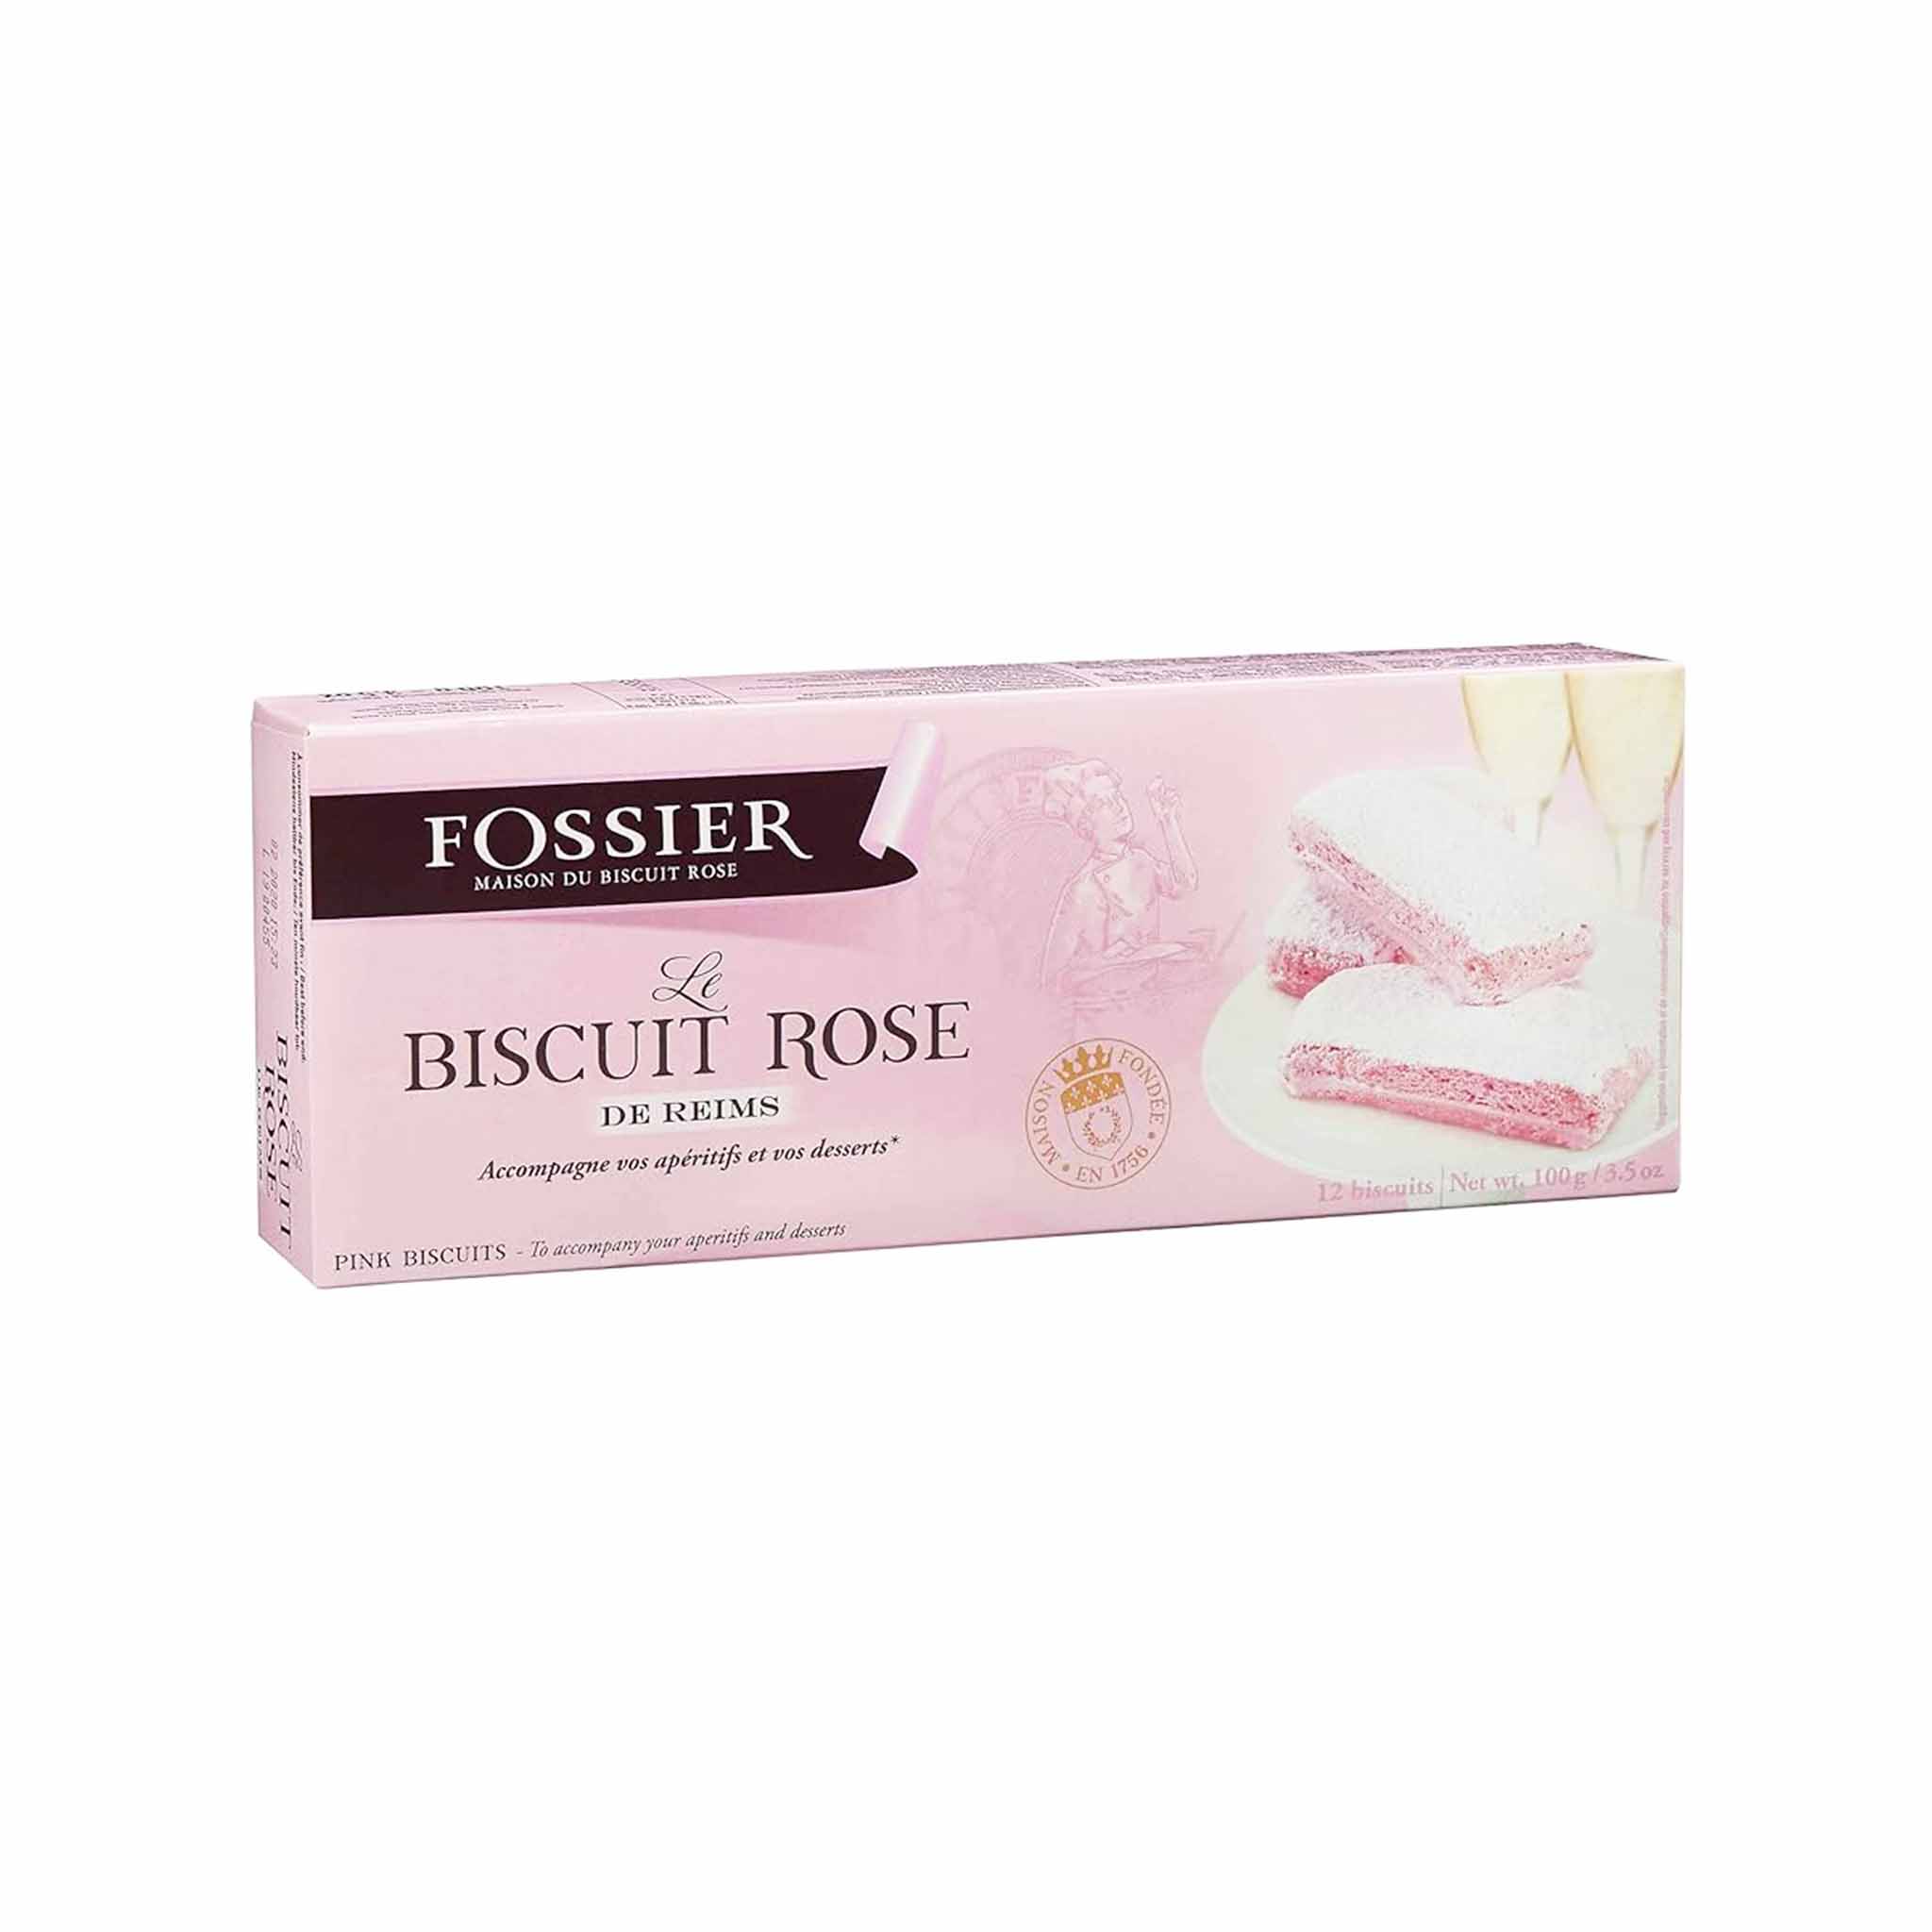 FOSSIER BISCUIT ROSES DE REIMS BOX 100g